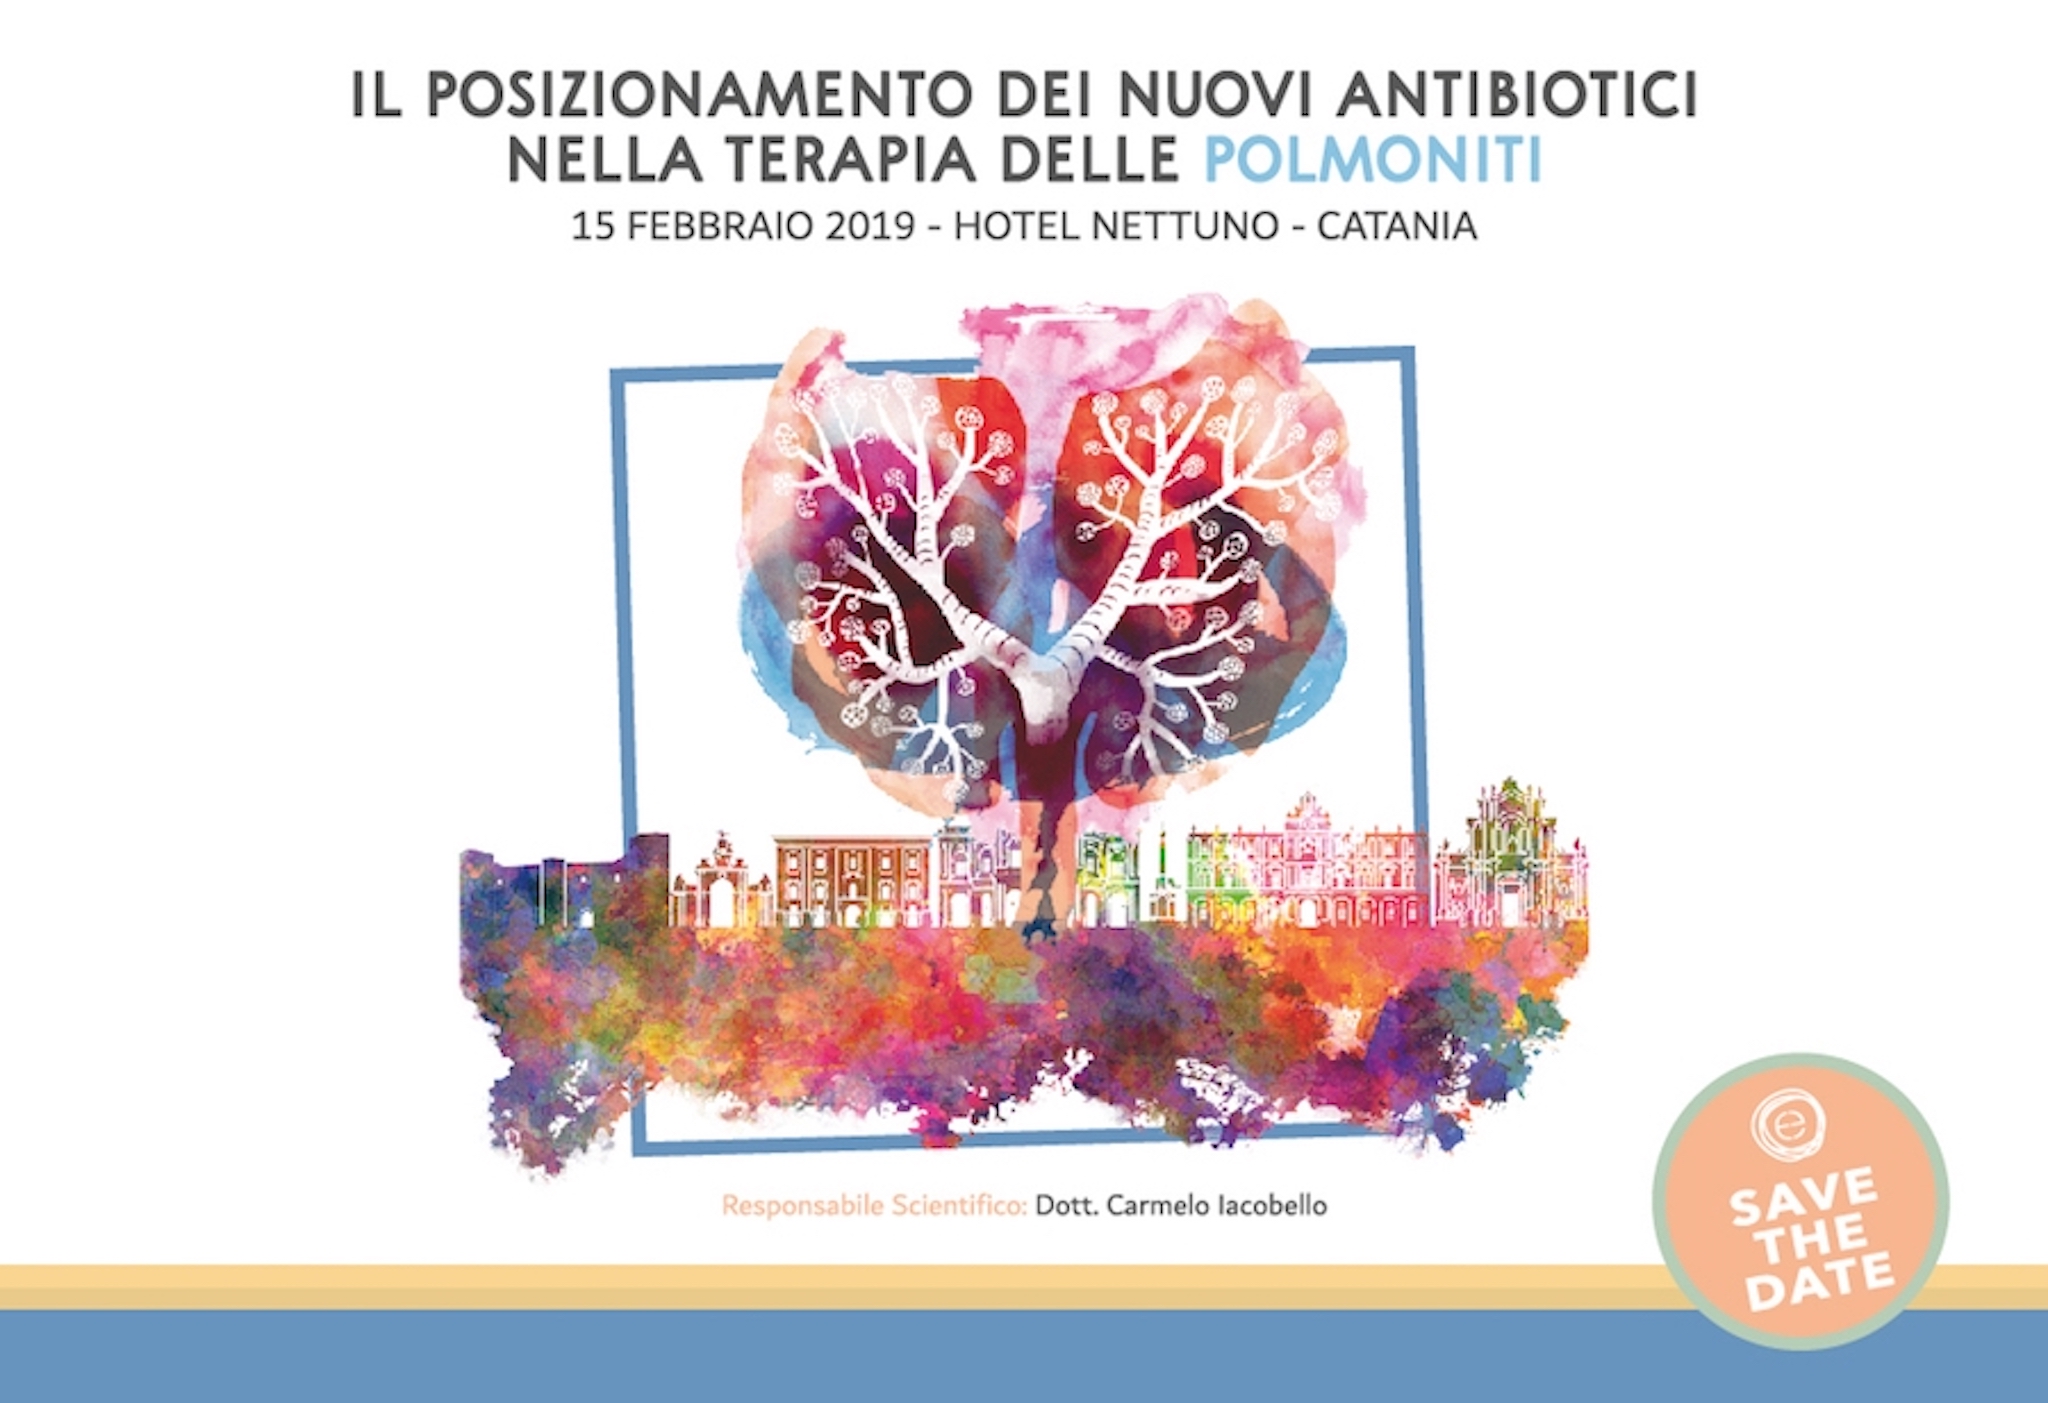 Il Posizionamento dei nuovi antibiotici nella Terapia delle polmoniti - 15 febbraio 2019